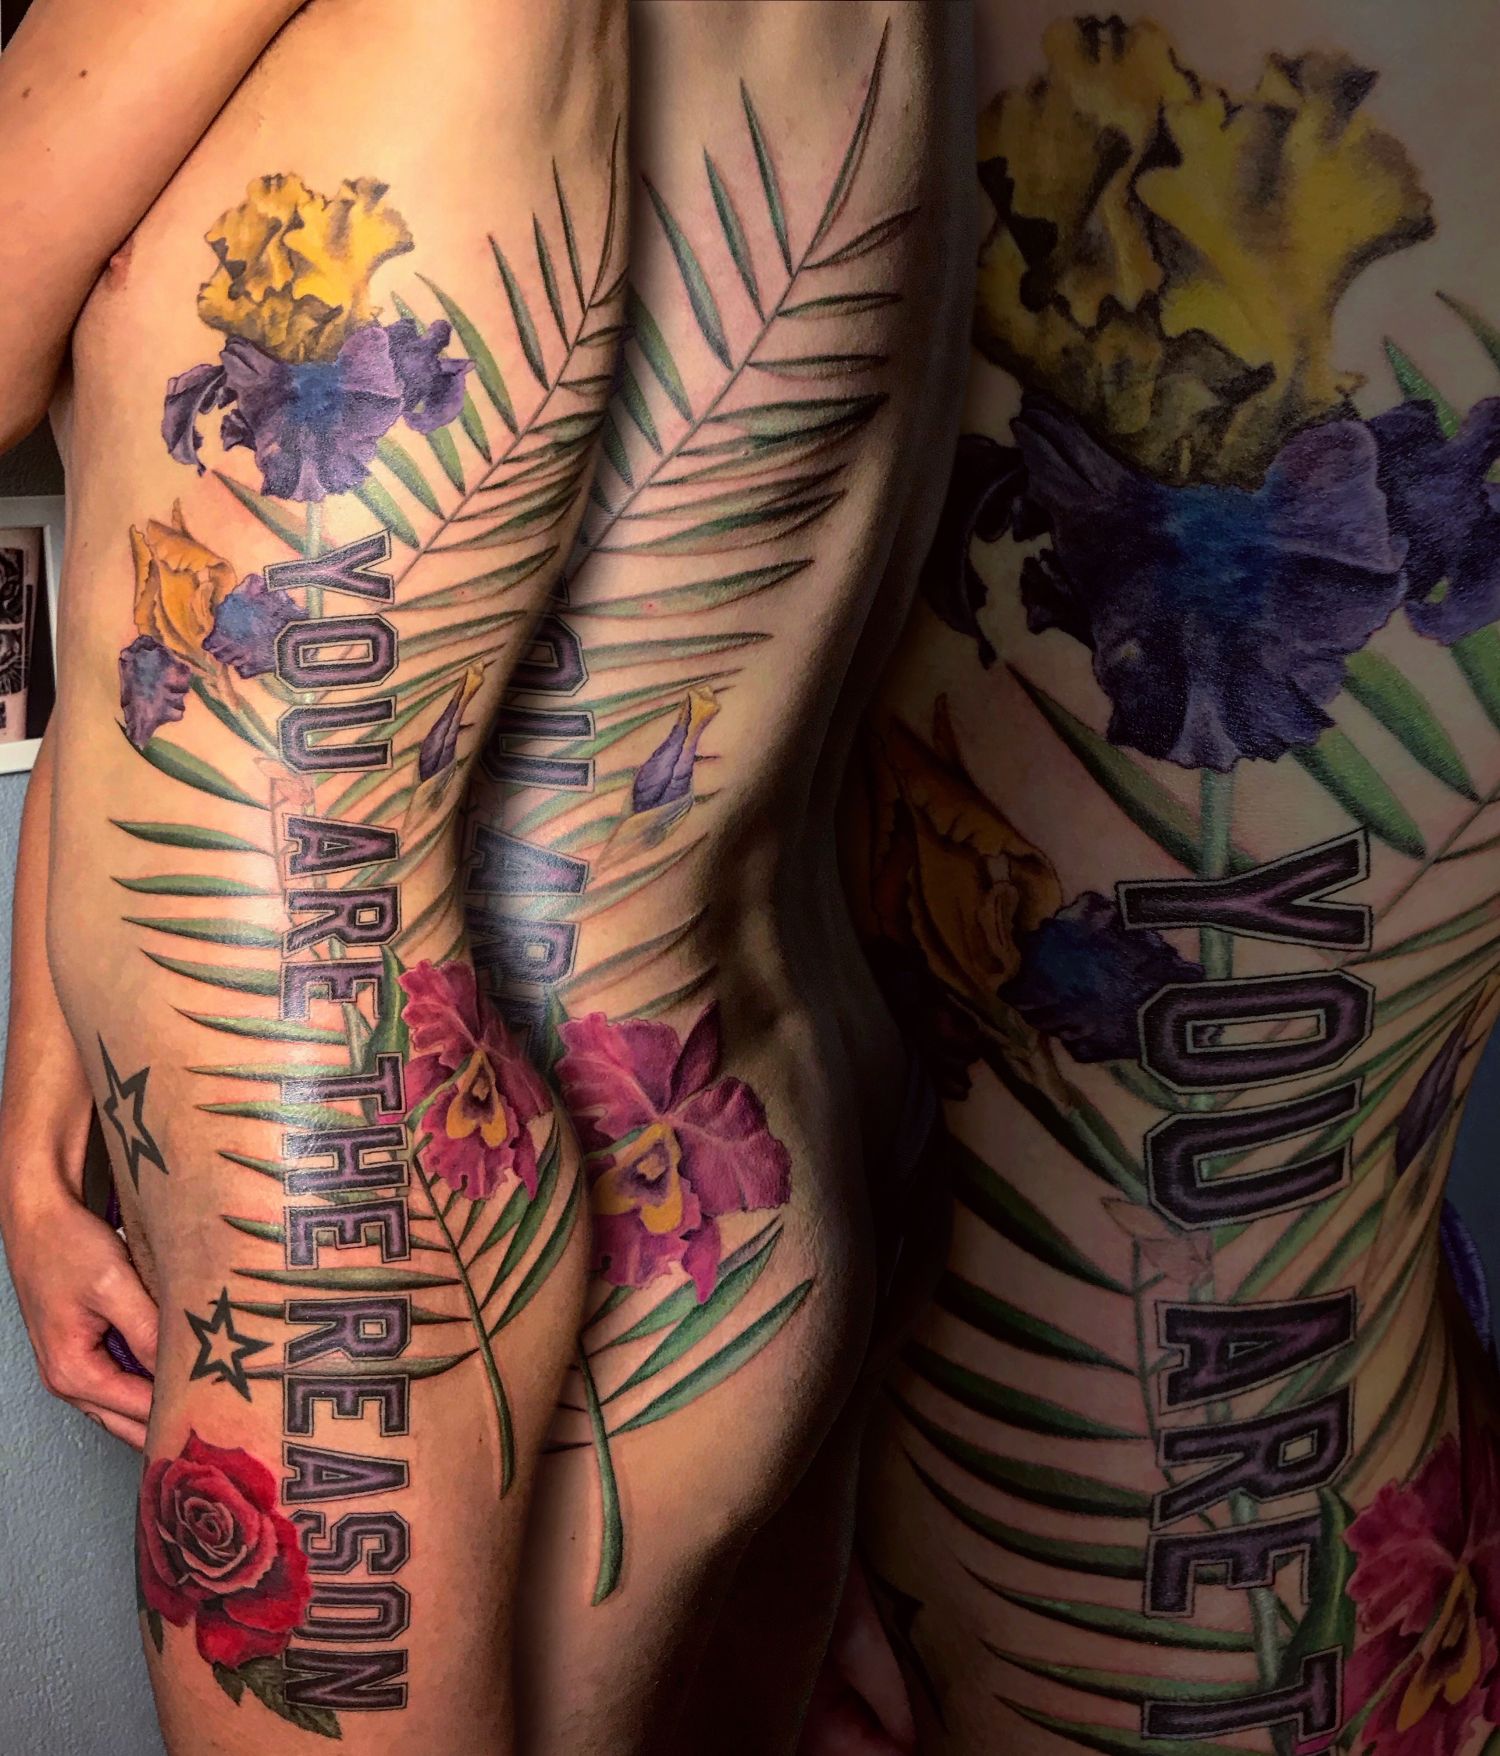 Comb tetoválás, Hát tetoválás, Színes tetoválás, Virág tetoválás